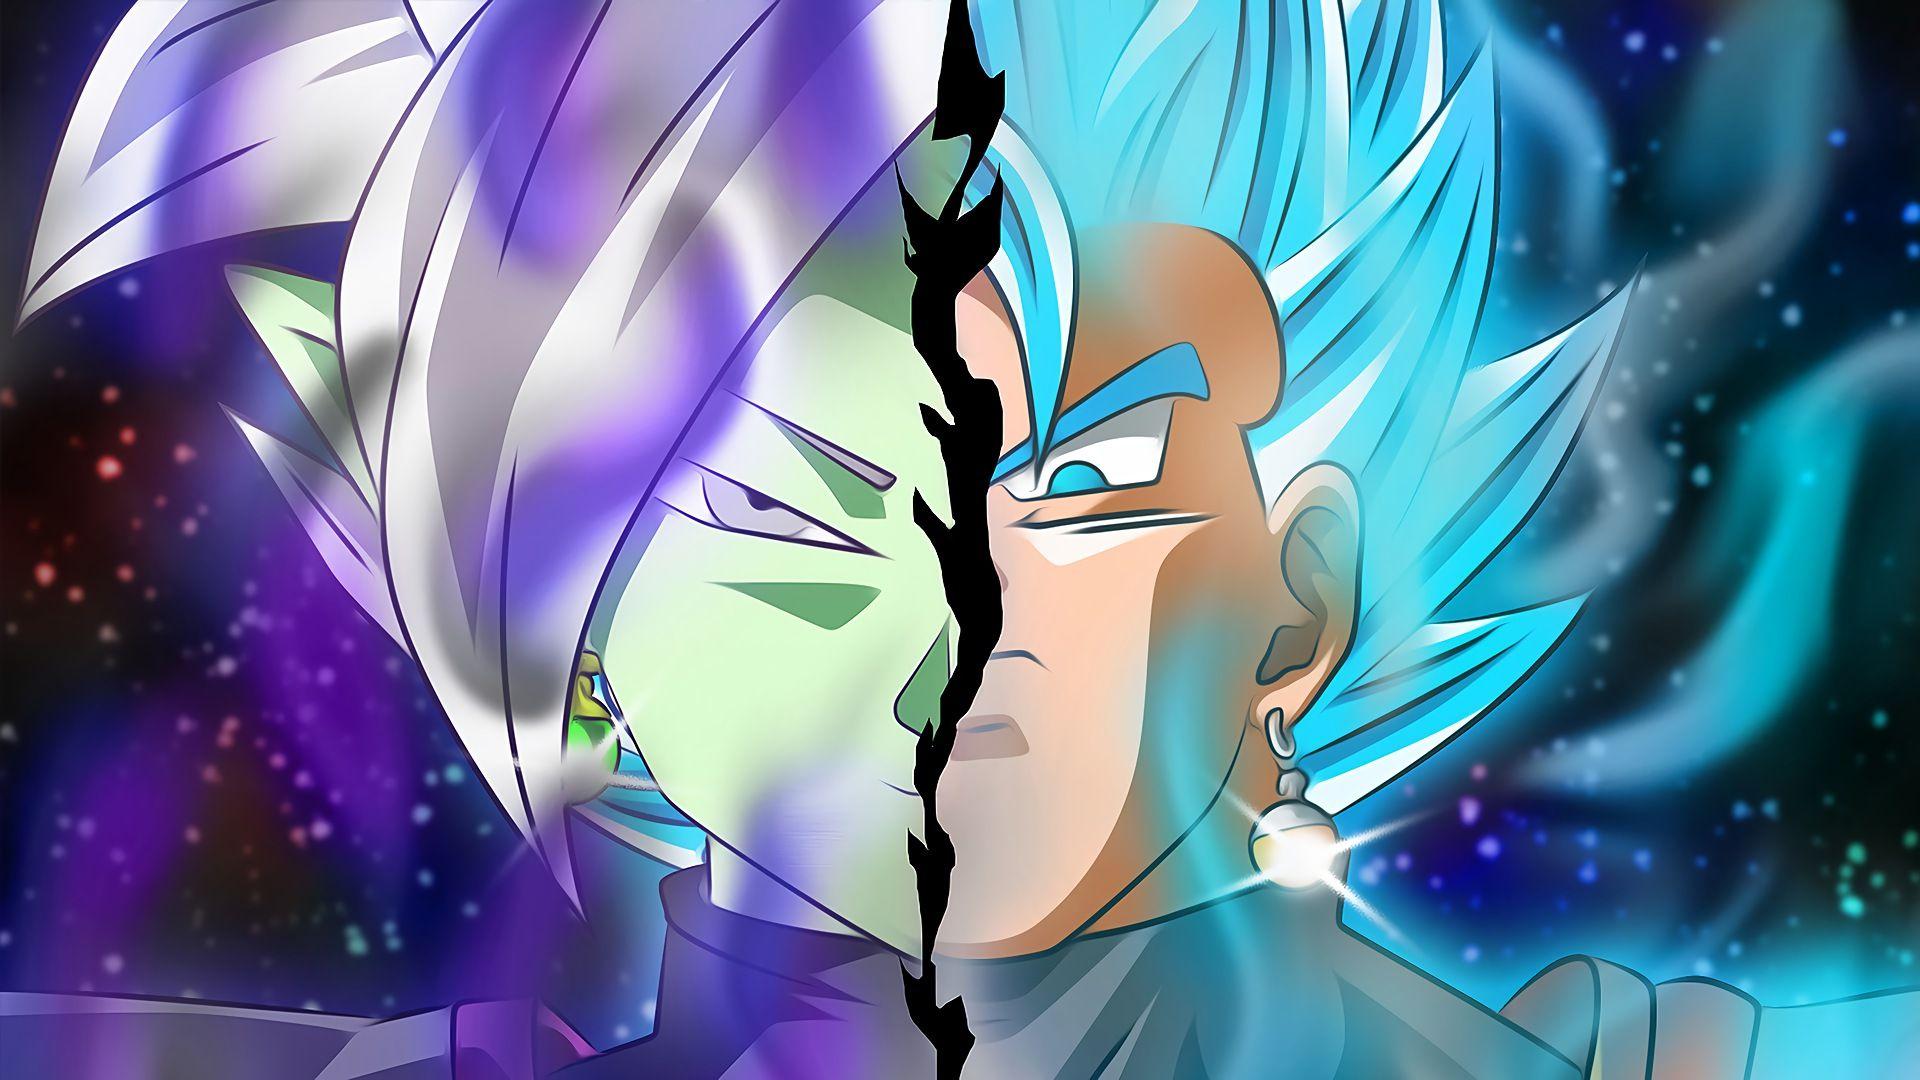 Vegito Super Saiyan Blue vs Fusion Z. Wallpaper